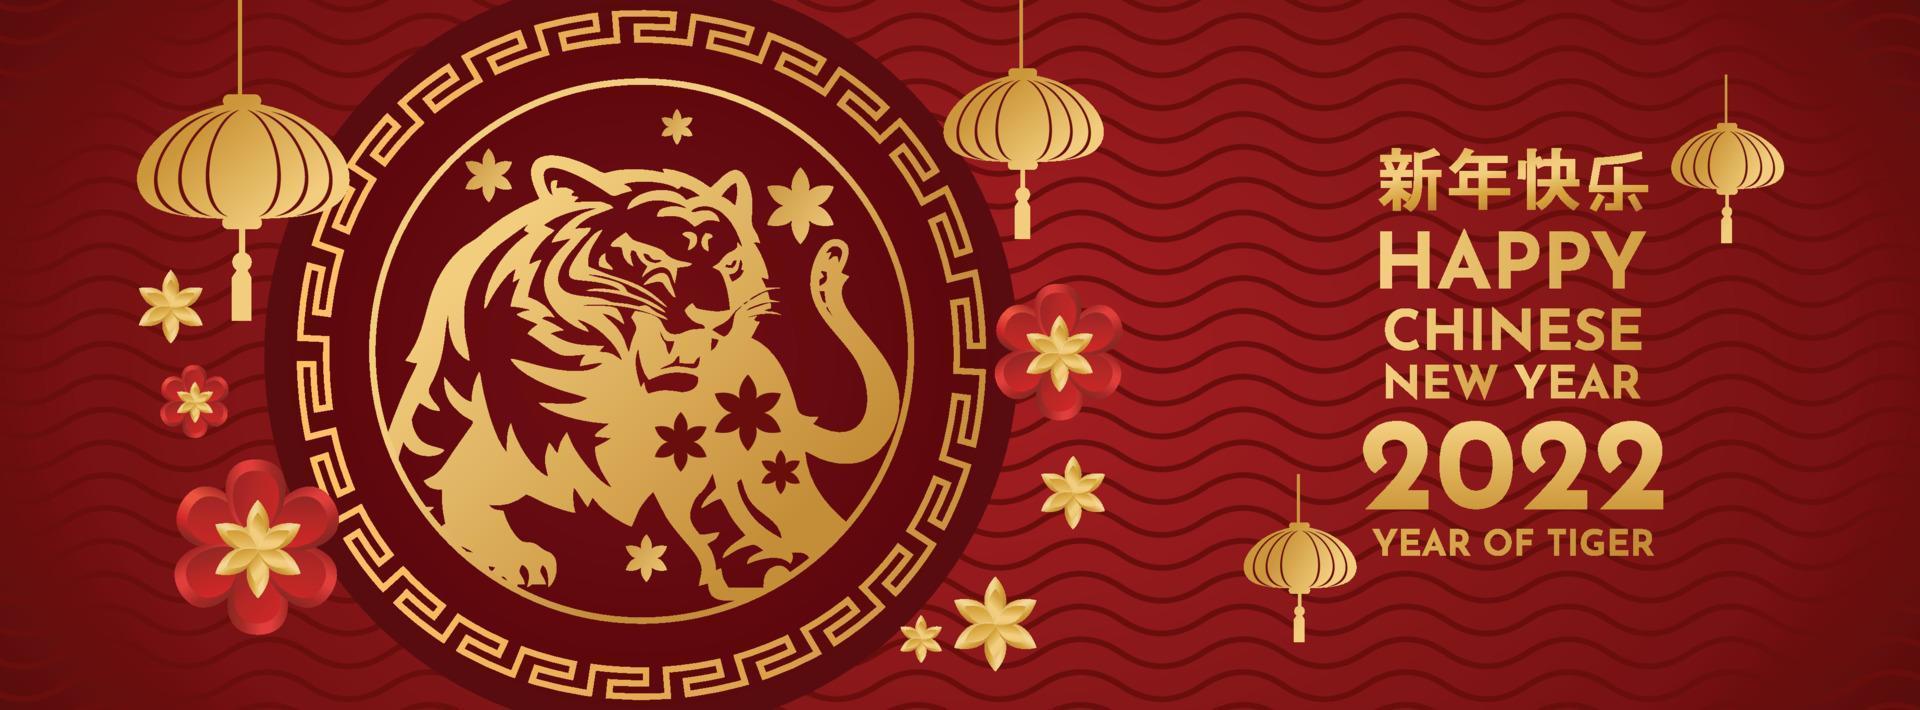 capodanno cinese 2022 anno della tigre fiore rosso e oro ed elementi asiatici sullo sfondo. traduzione capodanno cinese 2022, anno della tigre vettore